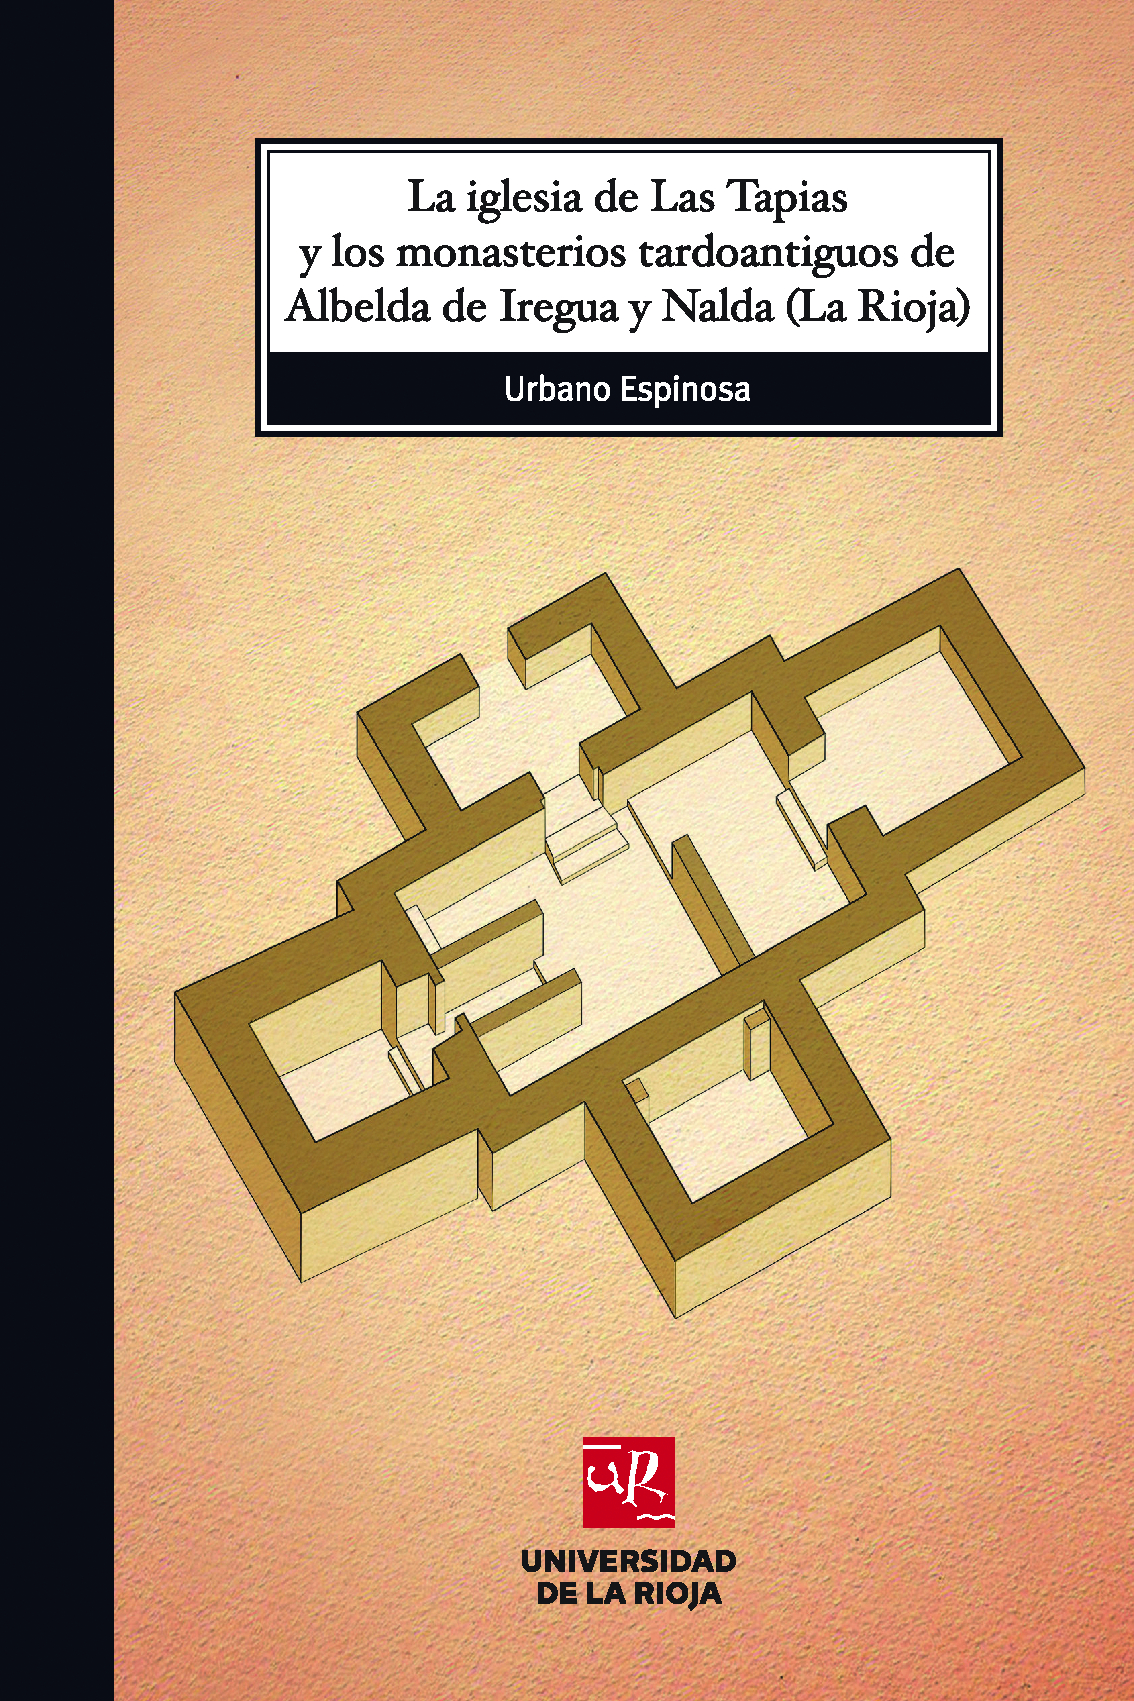 Imagen de portada del libro La iglesia de Las Tapias y los monasterios tardoantiguos de Albelda de Iregua y Nalda (La Rioja)